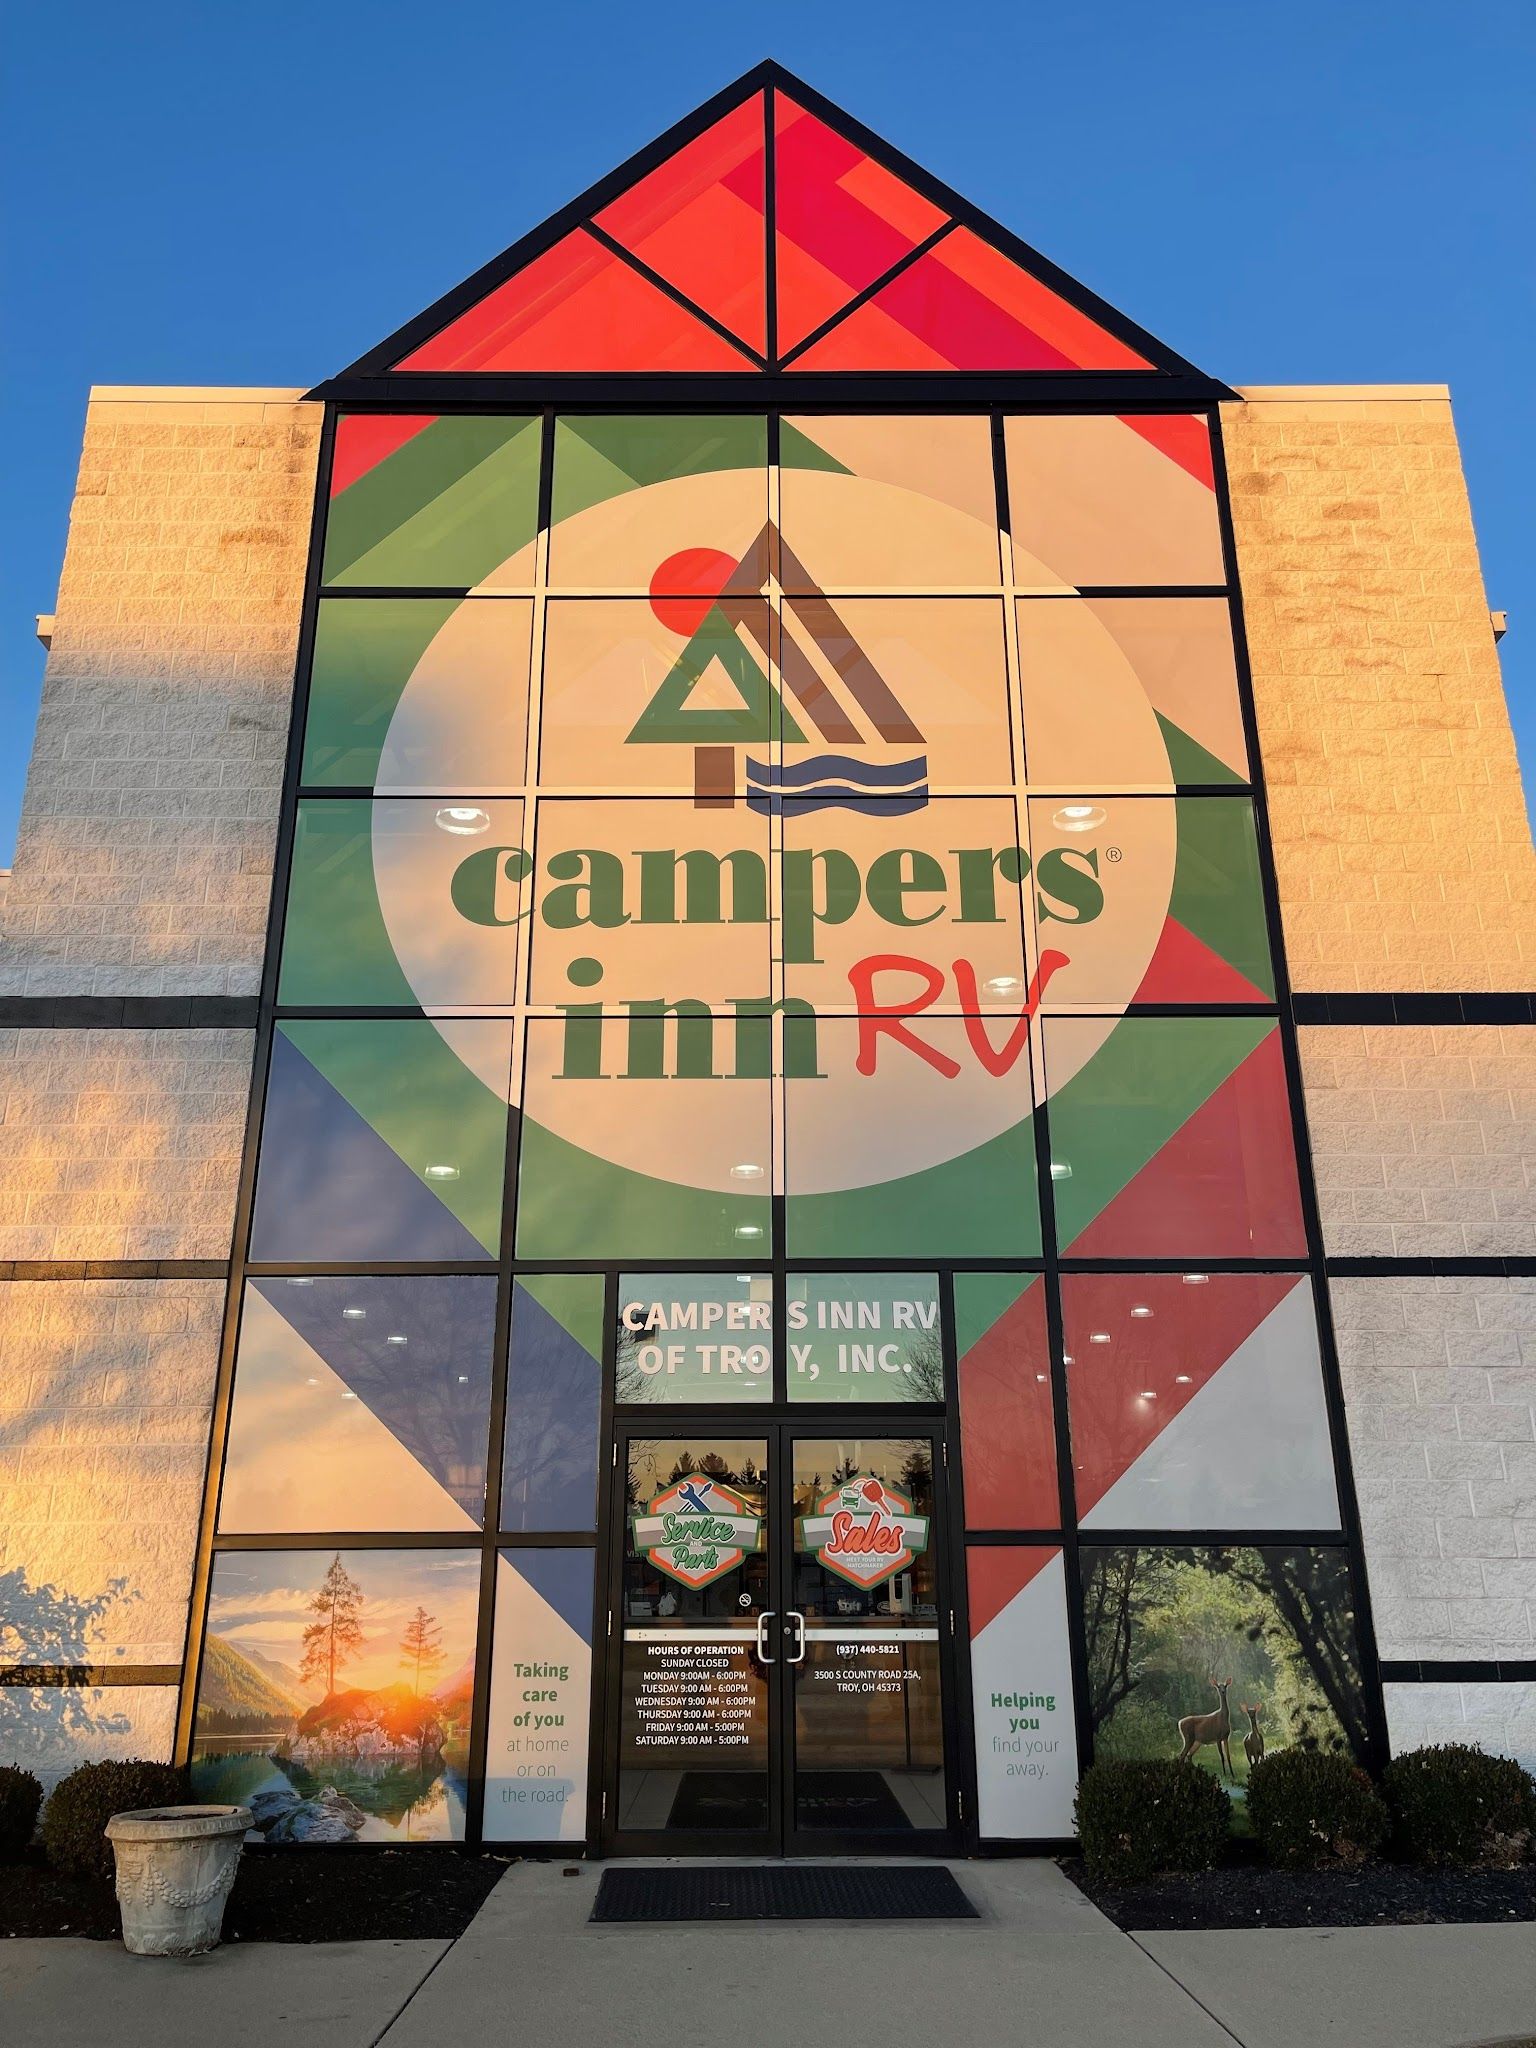 Campers Inn RV of Troy